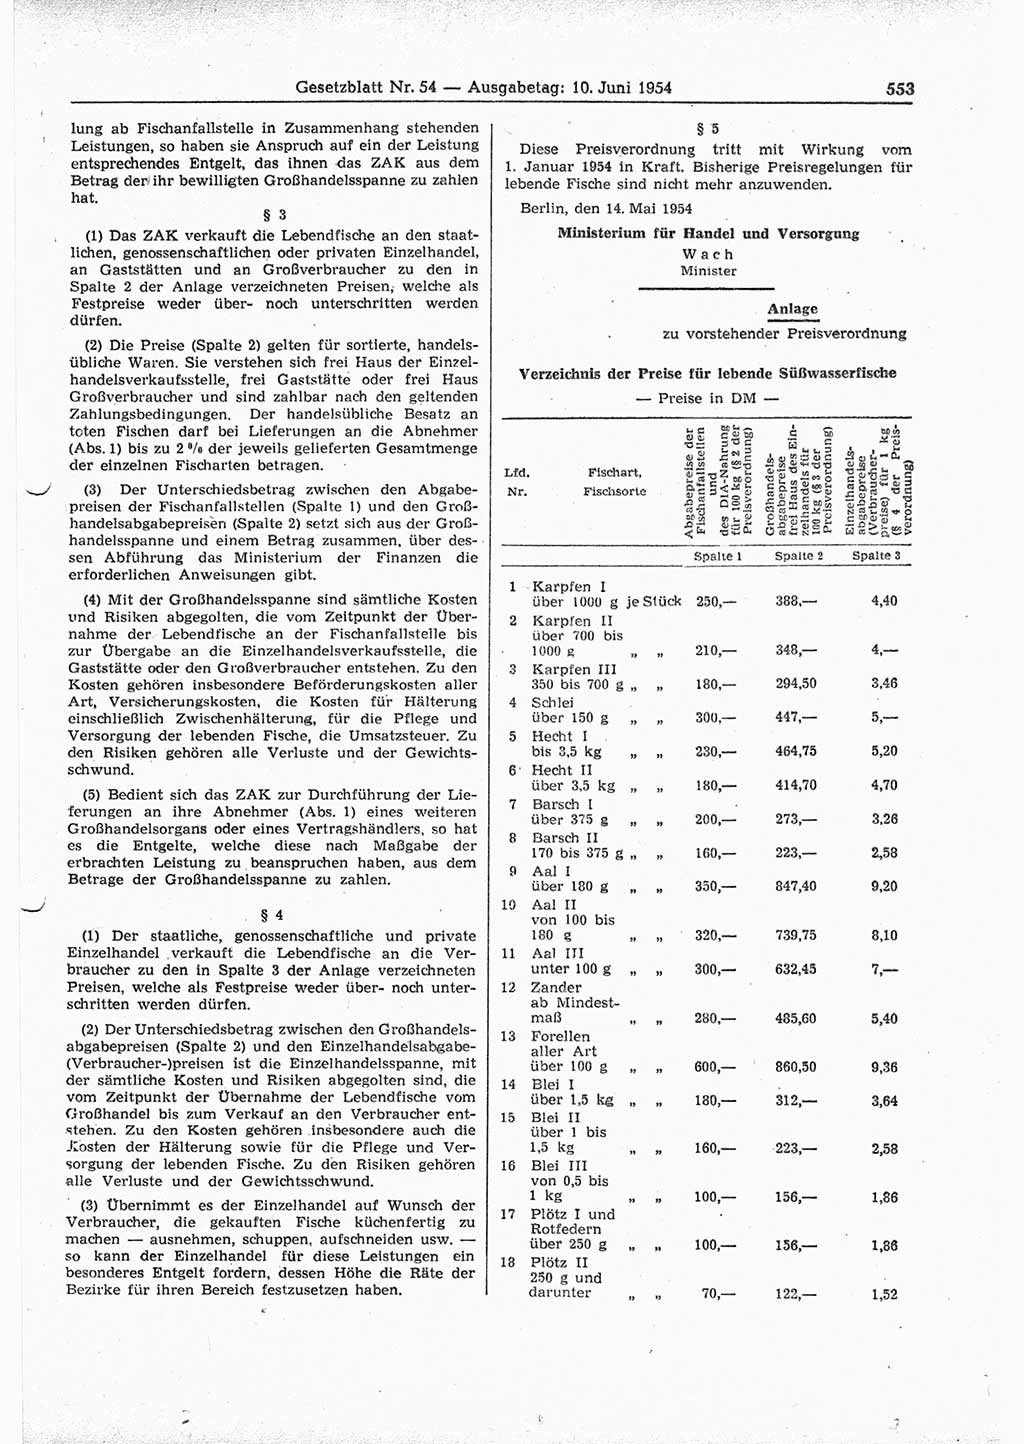 Gesetzblatt (GBl.) der Deutschen Demokratischen Republik (DDR) 1954, Seite 553 (GBl. DDR 1954, S. 553)